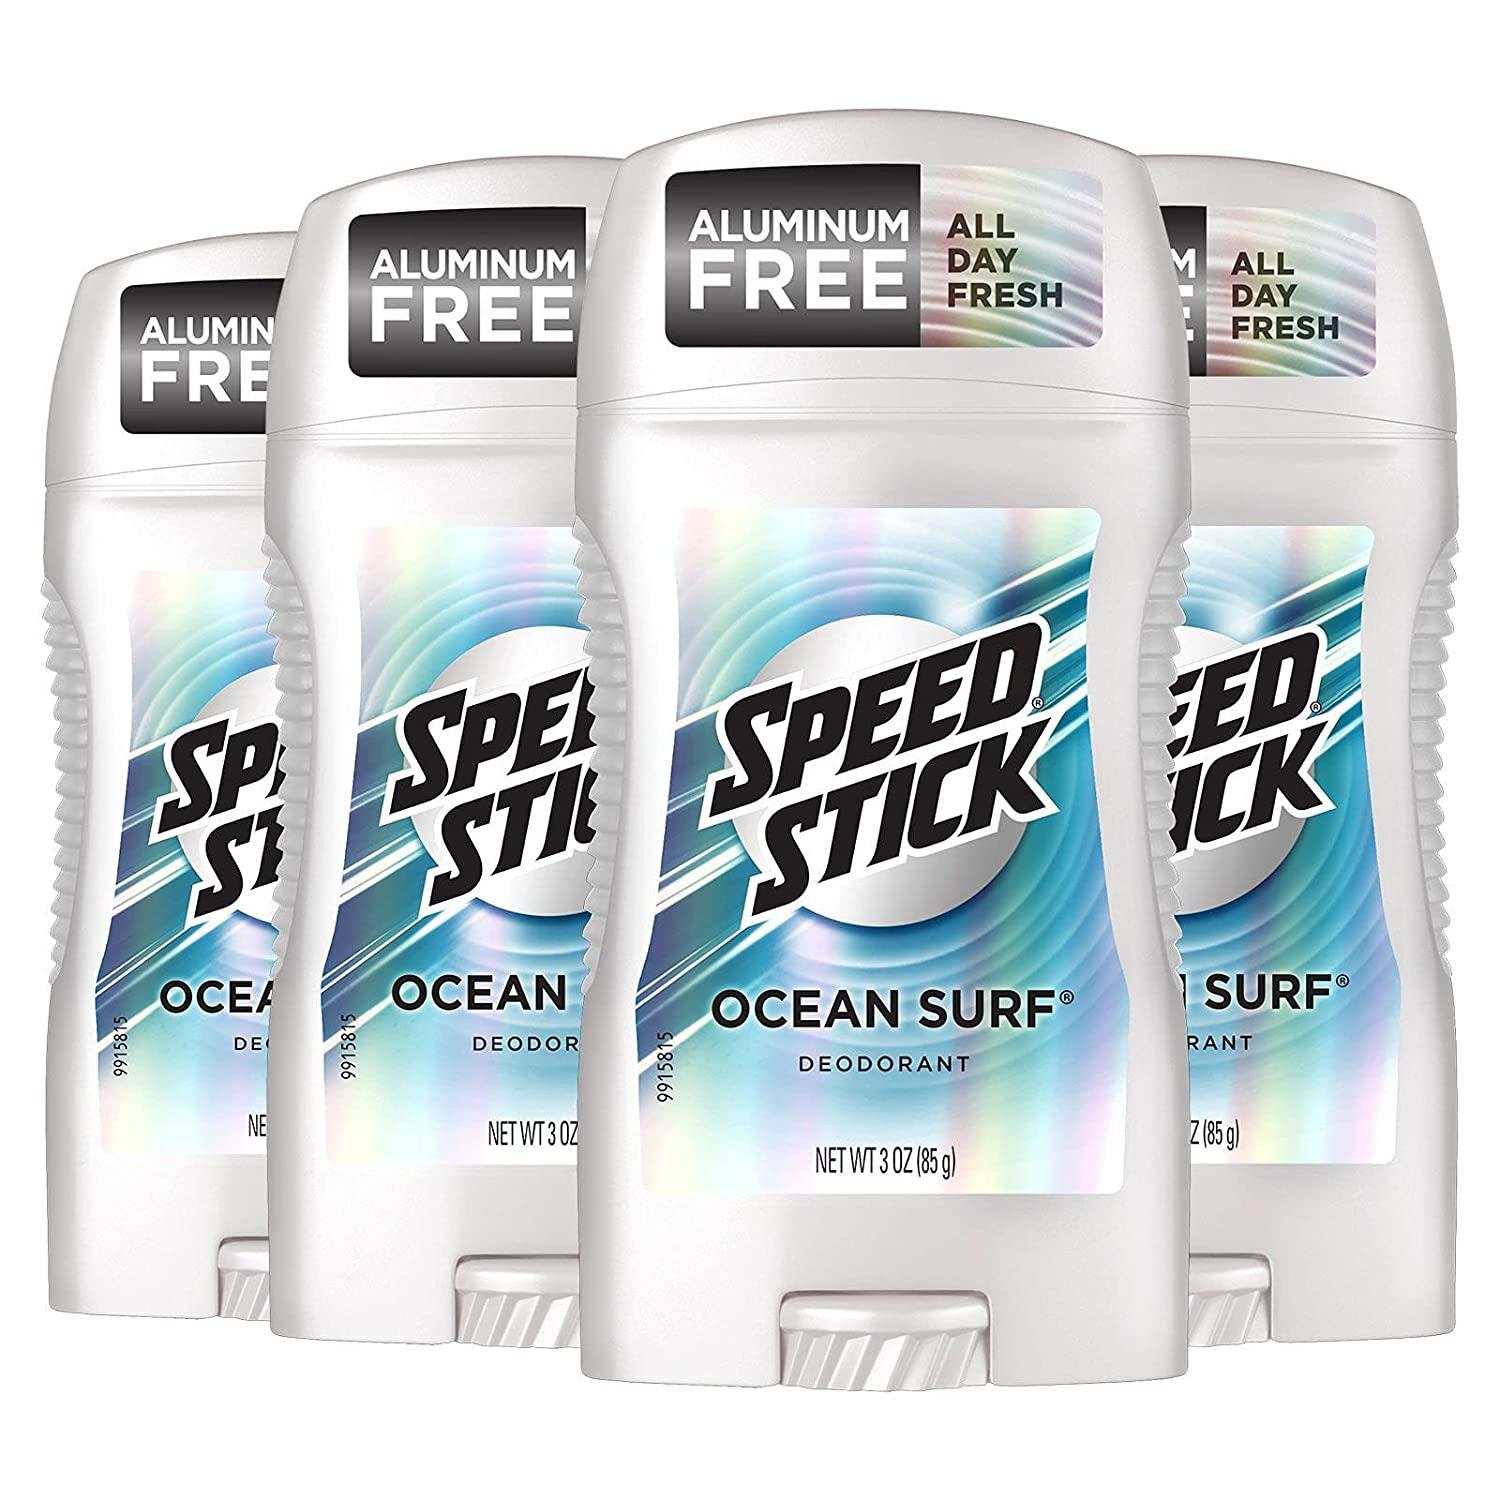 4 Speed Stick Ocean Surf Deodorant for Men for $3.18 Shipped